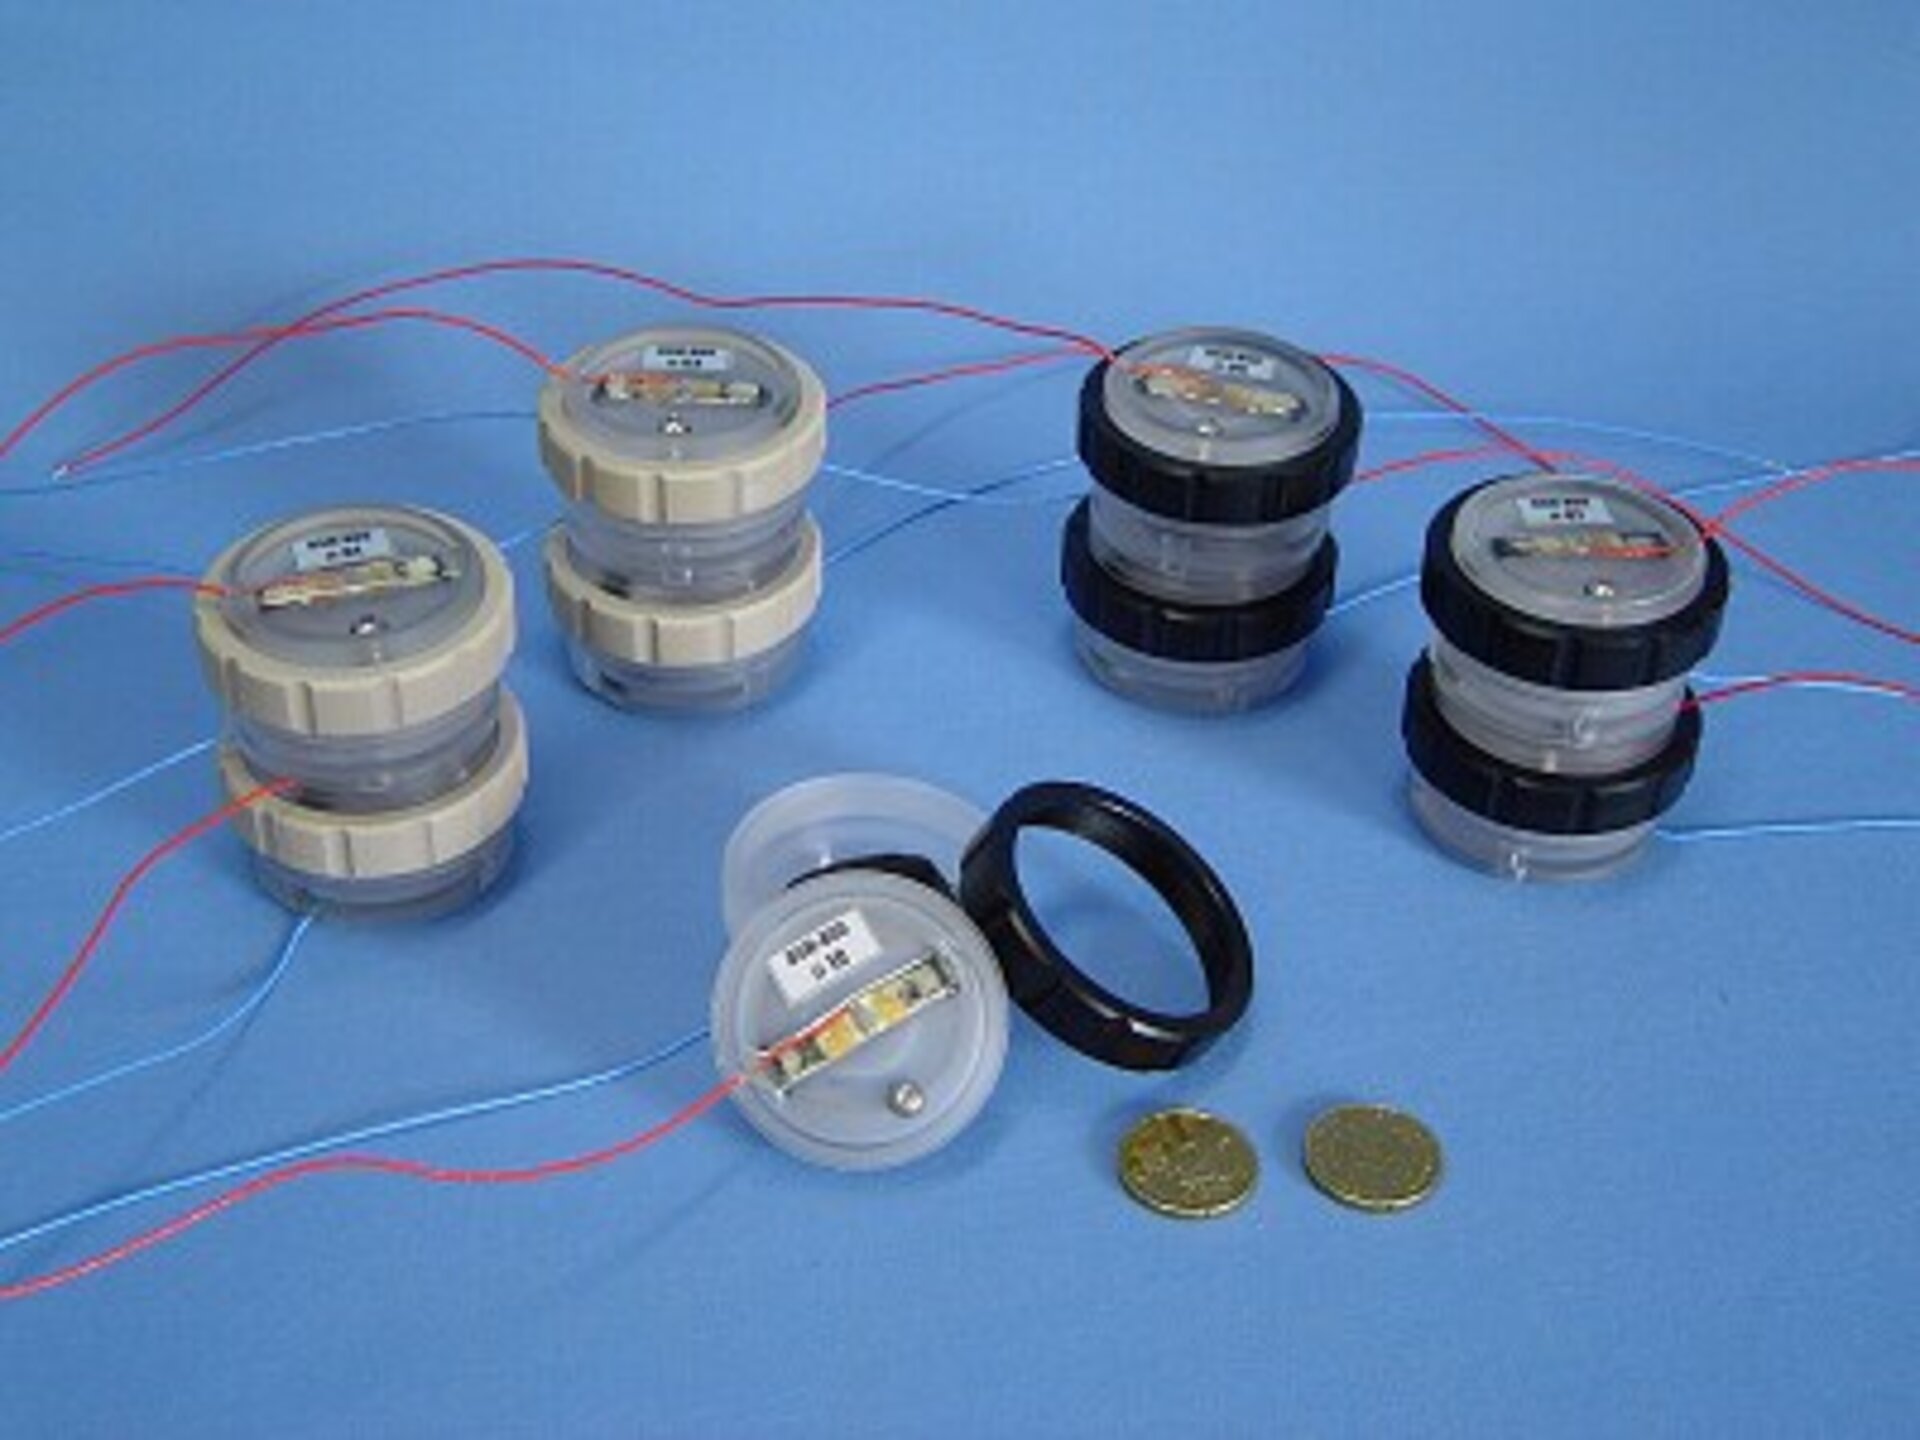 Vier sets brandstofcellen zoals die bij het experiment gebruikt worden